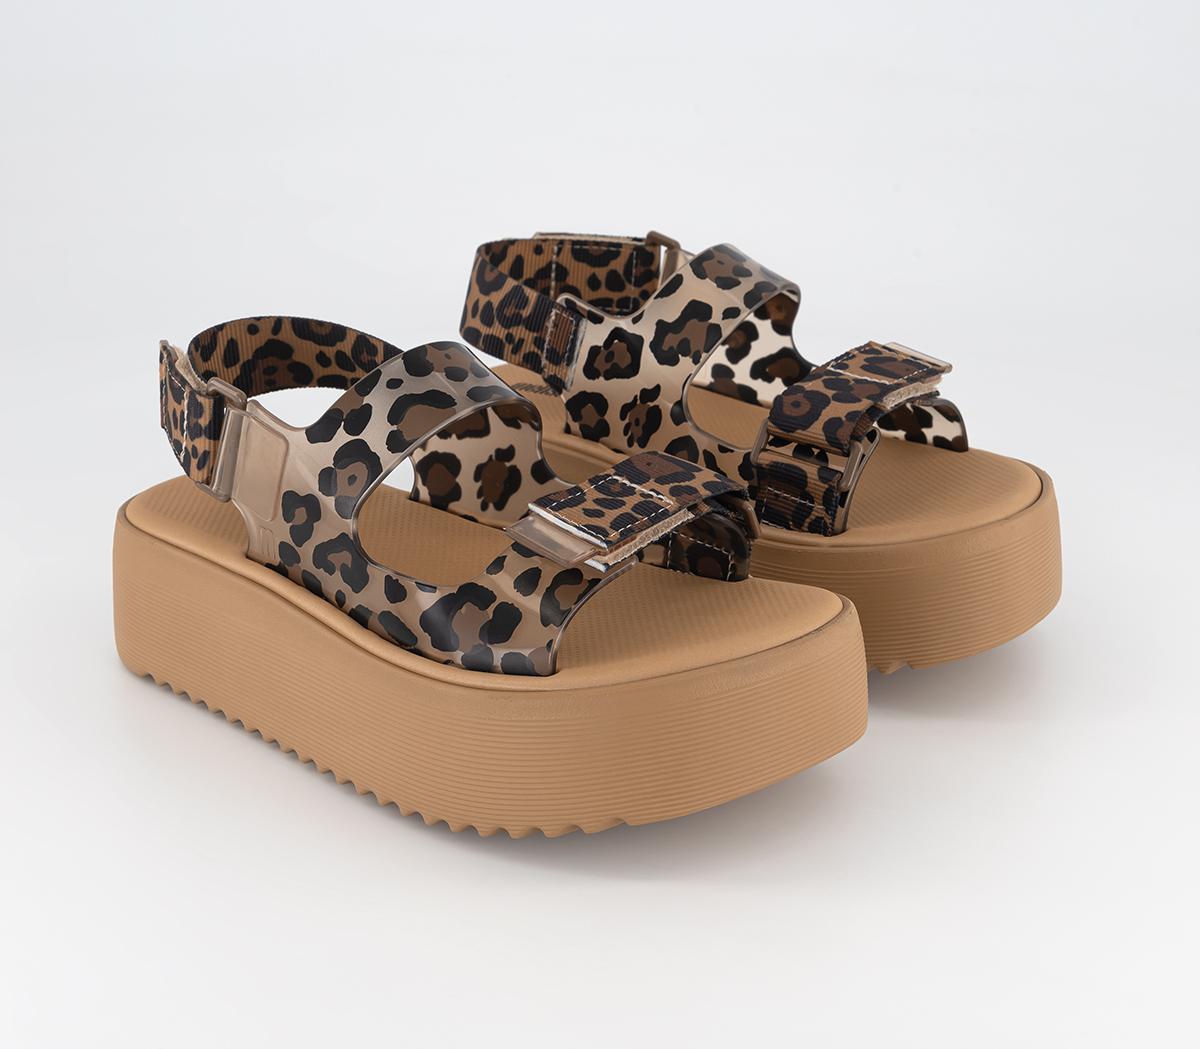 Melissa Womens Brave Papete Platform Sandals Tan Leopard, 4